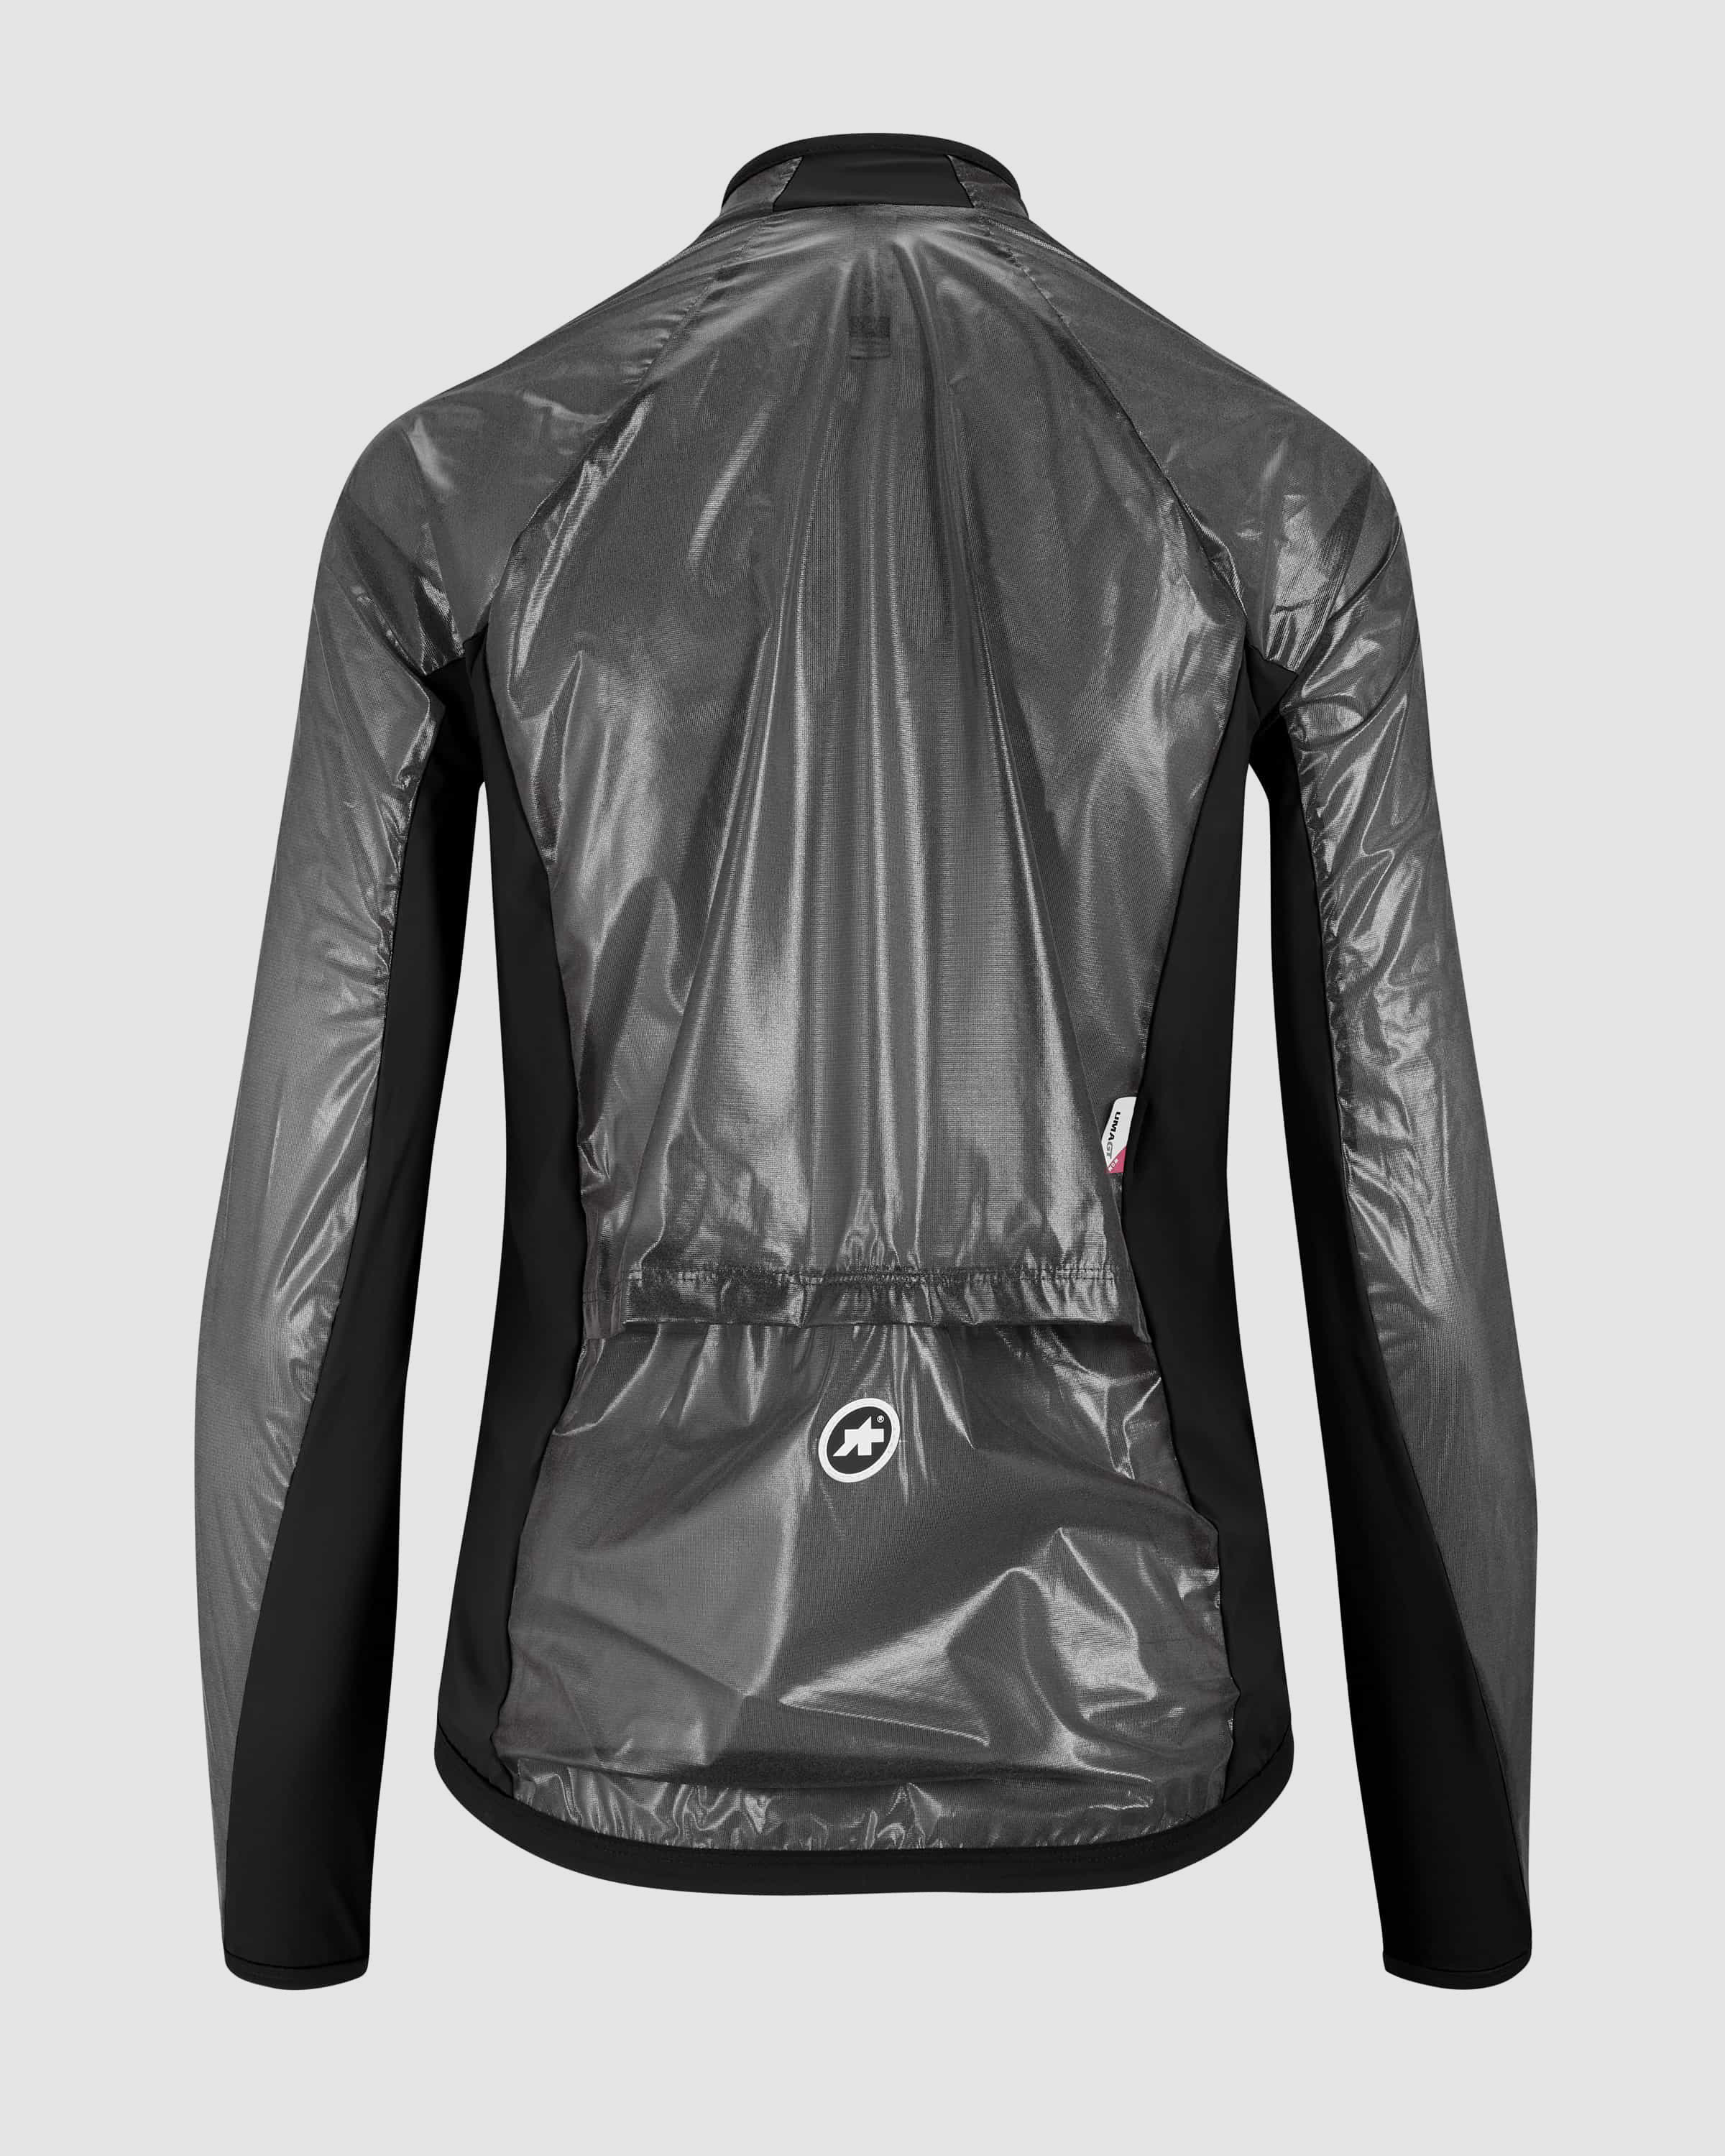 UMA GT Clima Jacket EVO, blackSeries » ASSOS Of Switzerland